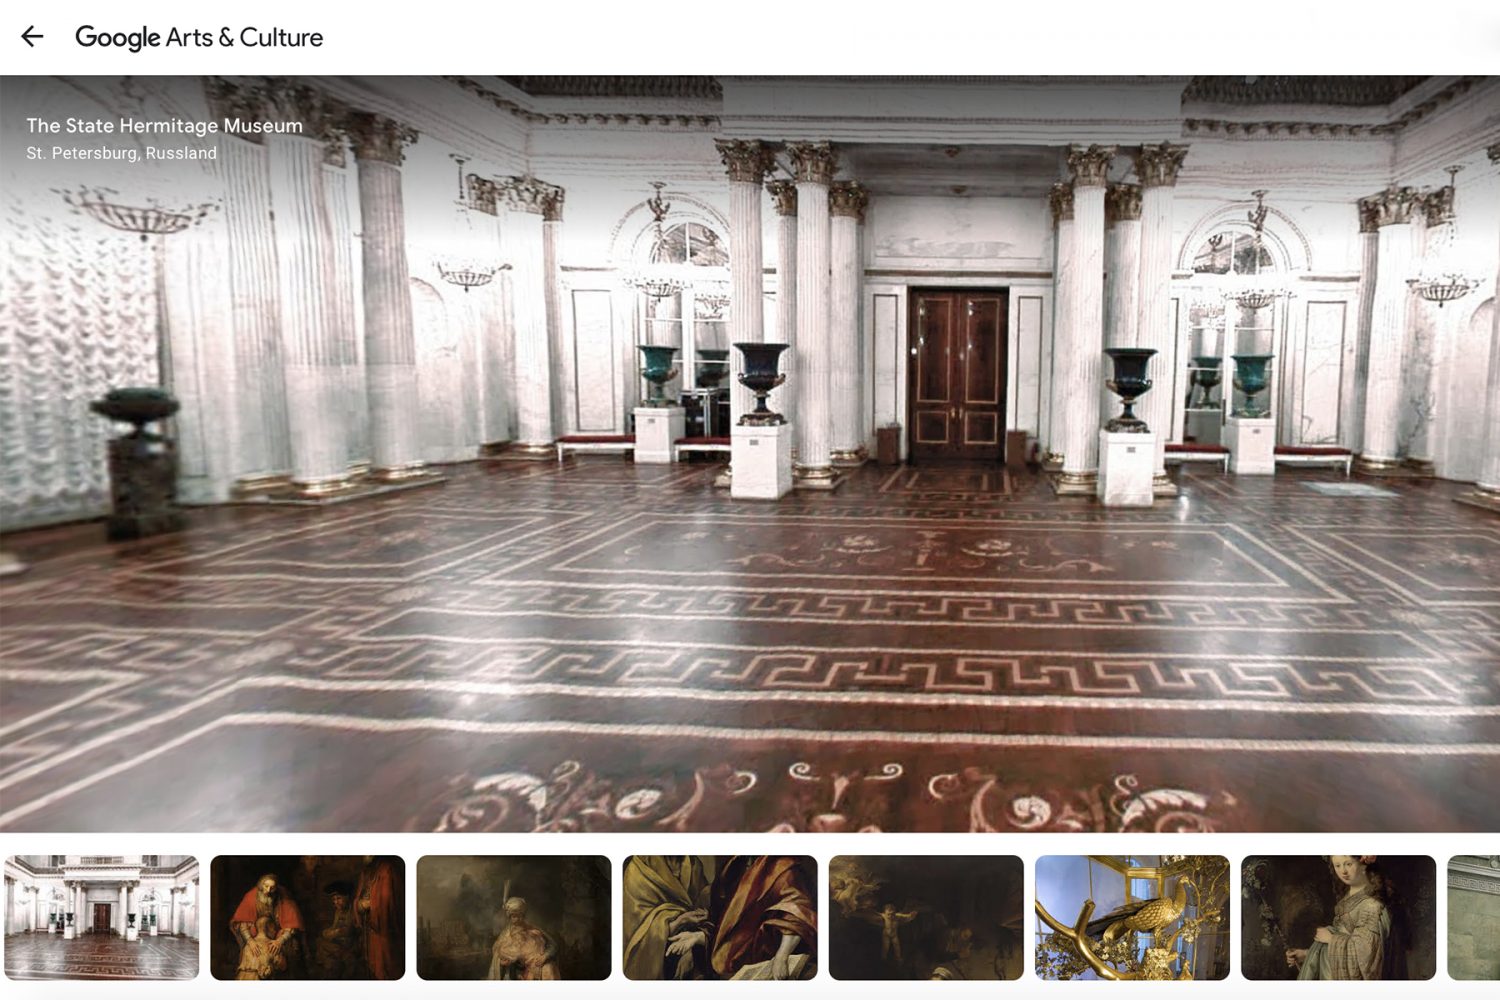 Virtuell verreisen: 20 Museen rund um die Welt, die man von zu Hause besuchen kann